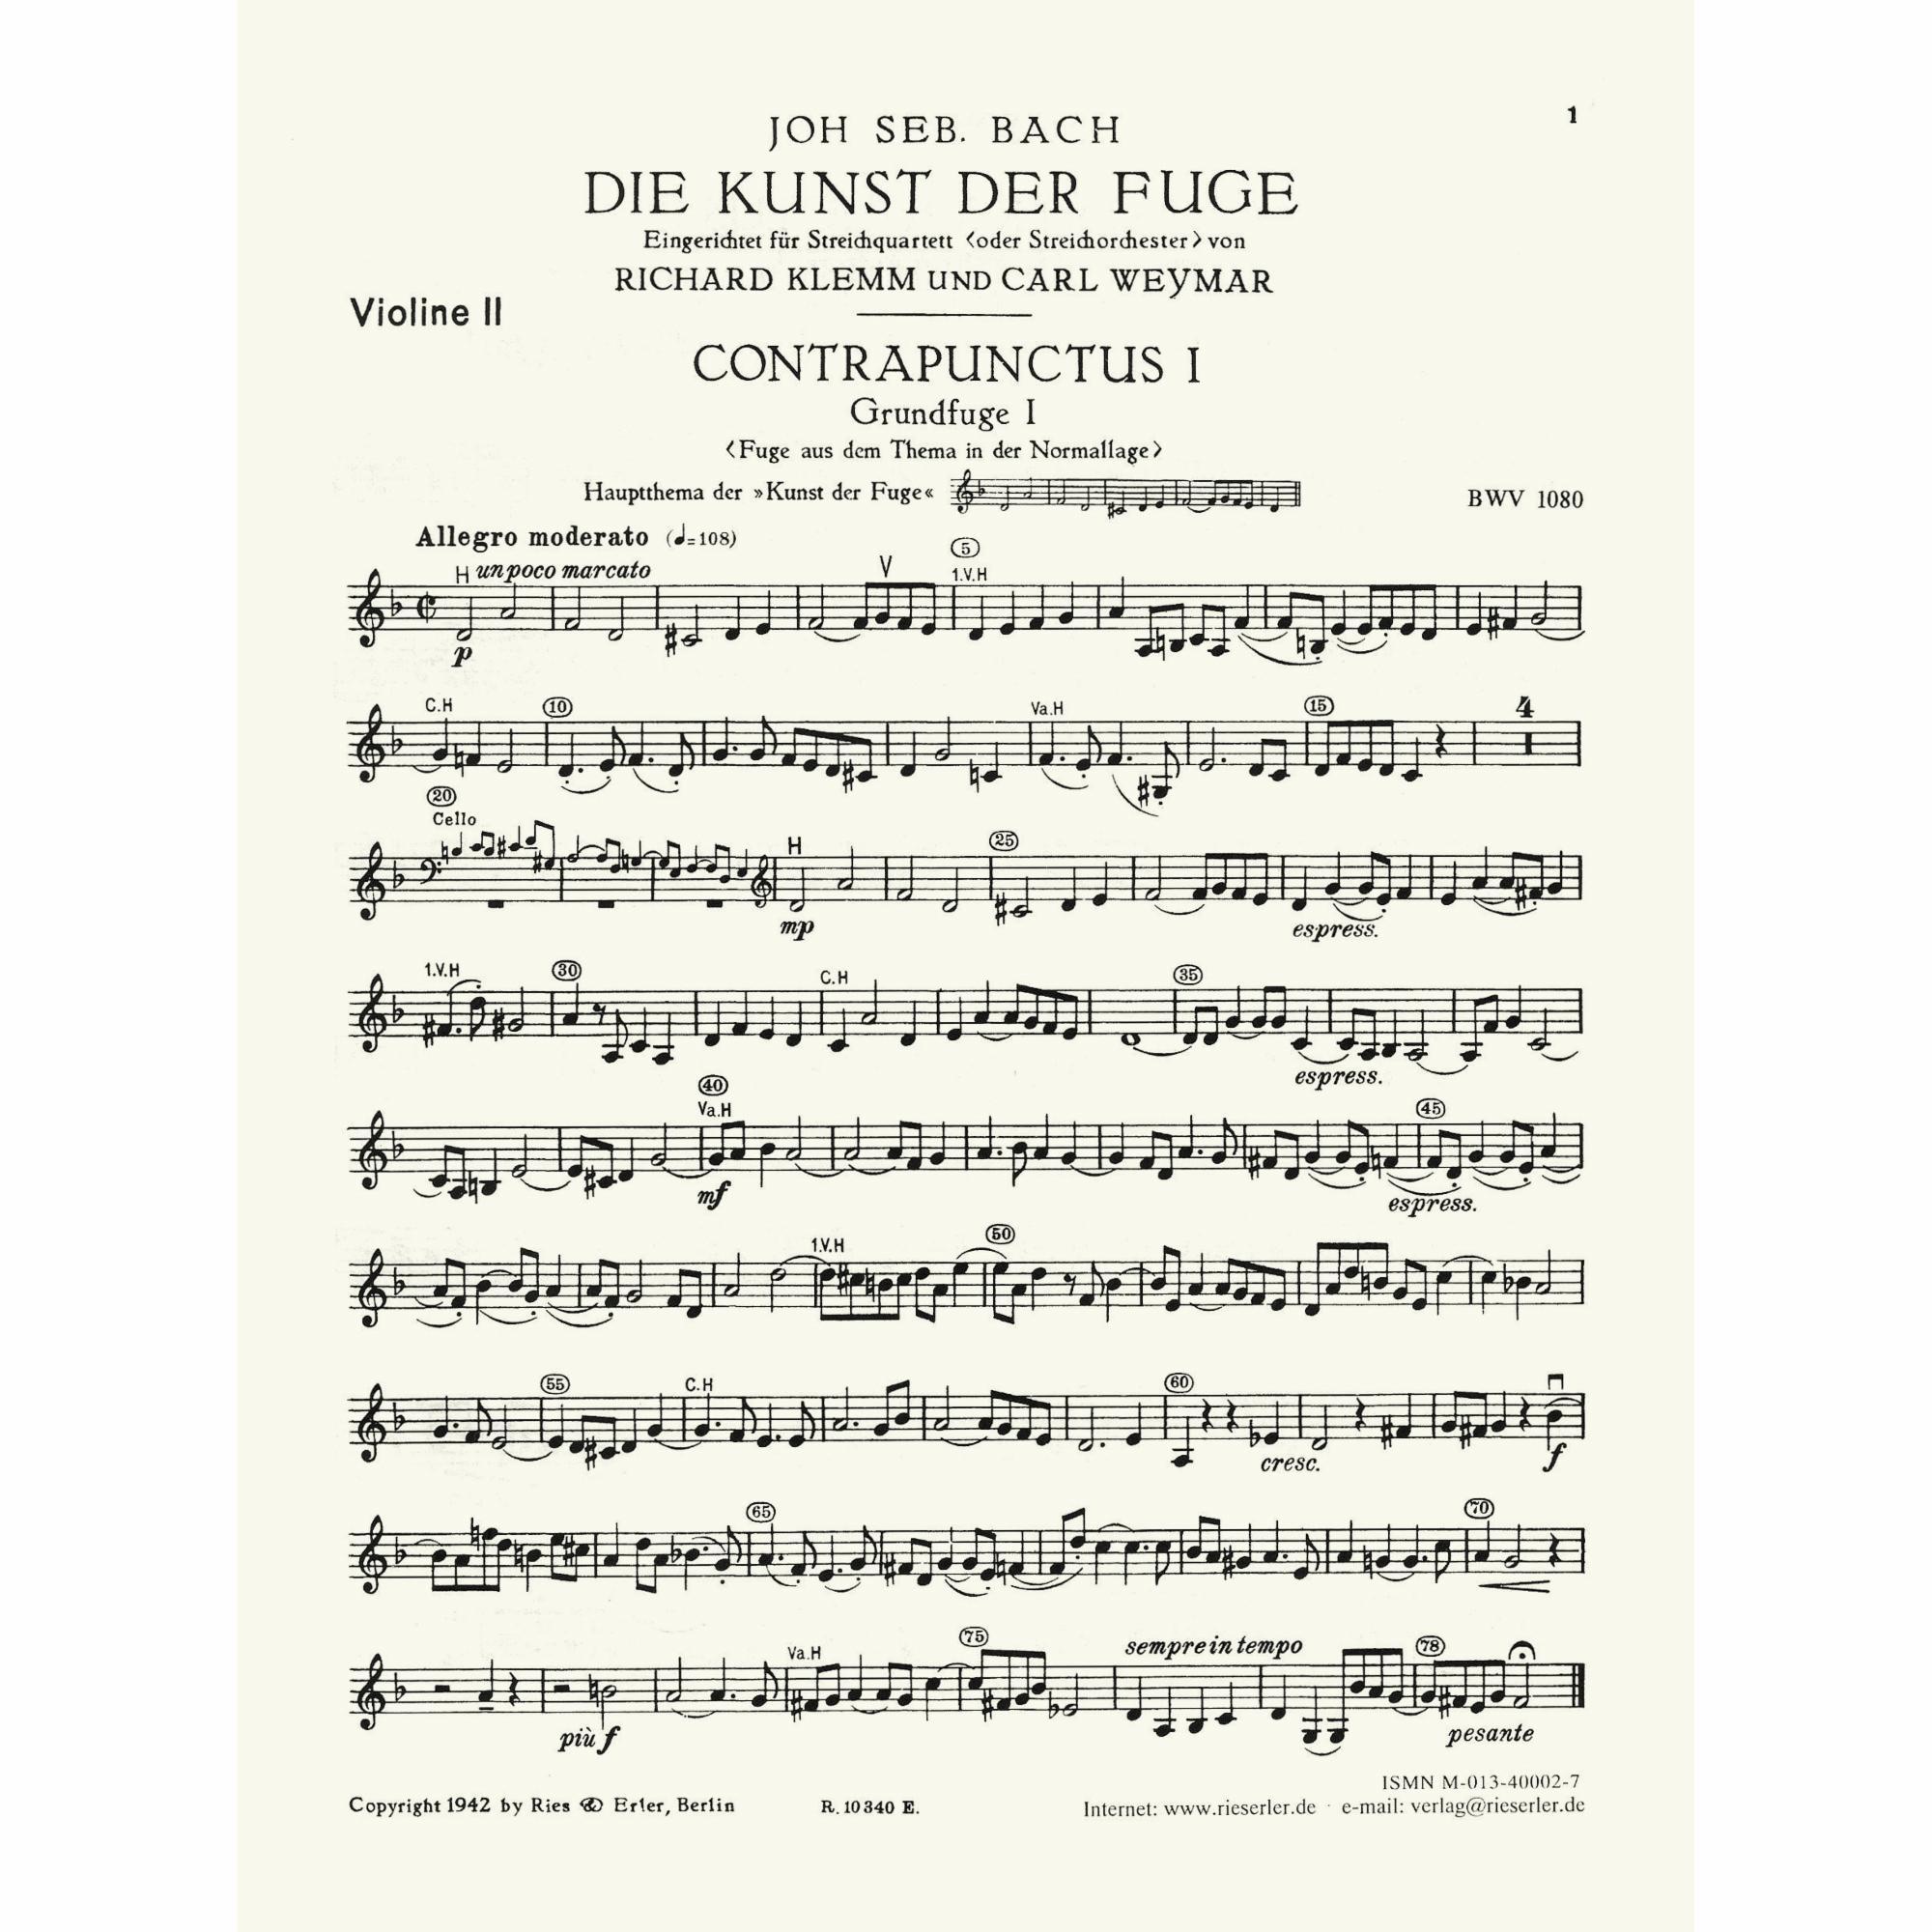 Sample: Violin II (Pg. 1)